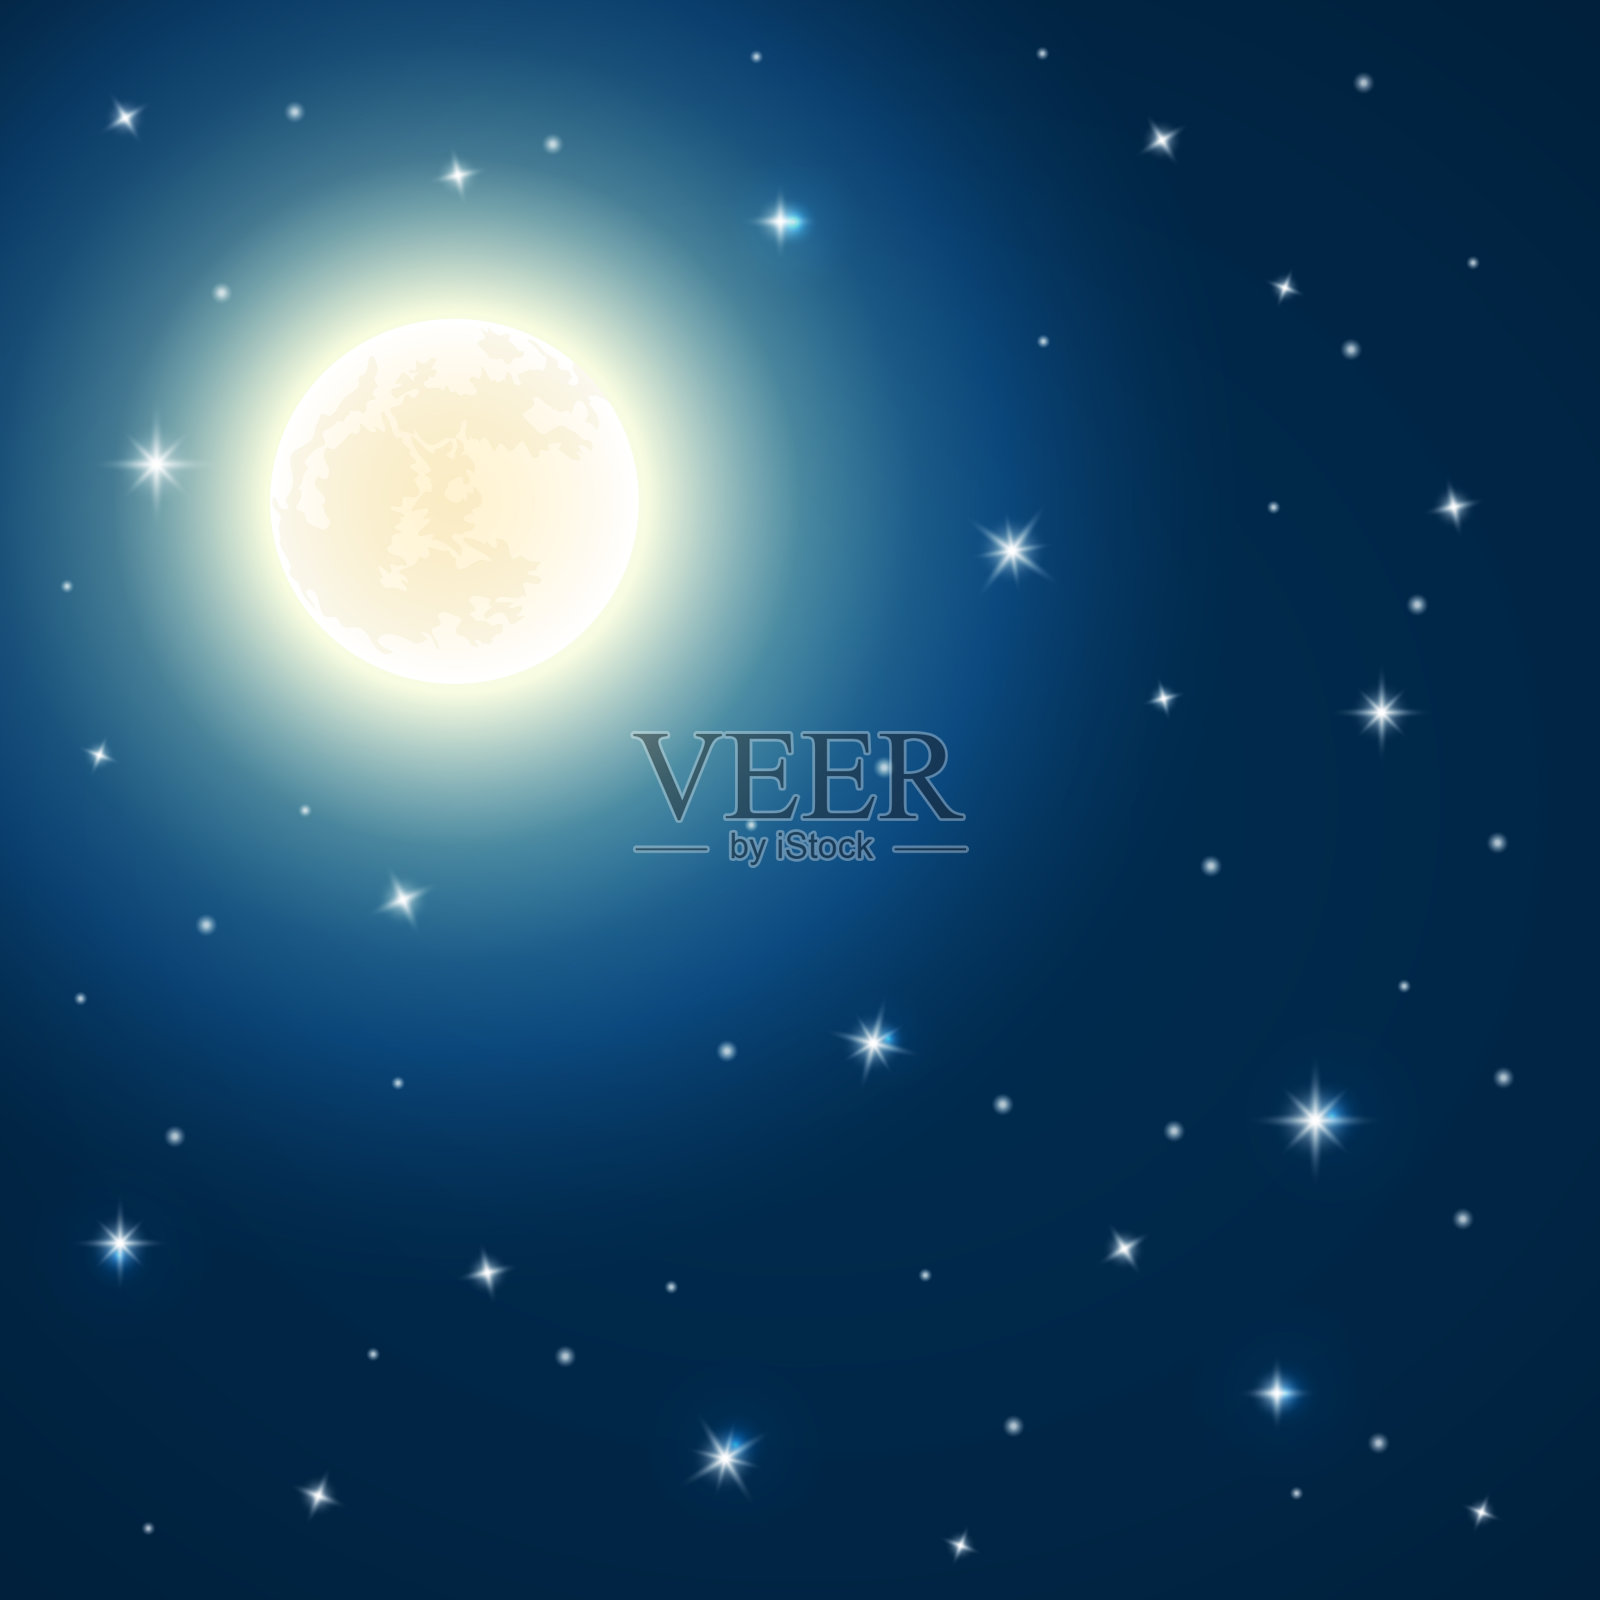 夜晚背景与月亮和星星在深蓝色的天空插画图片素材